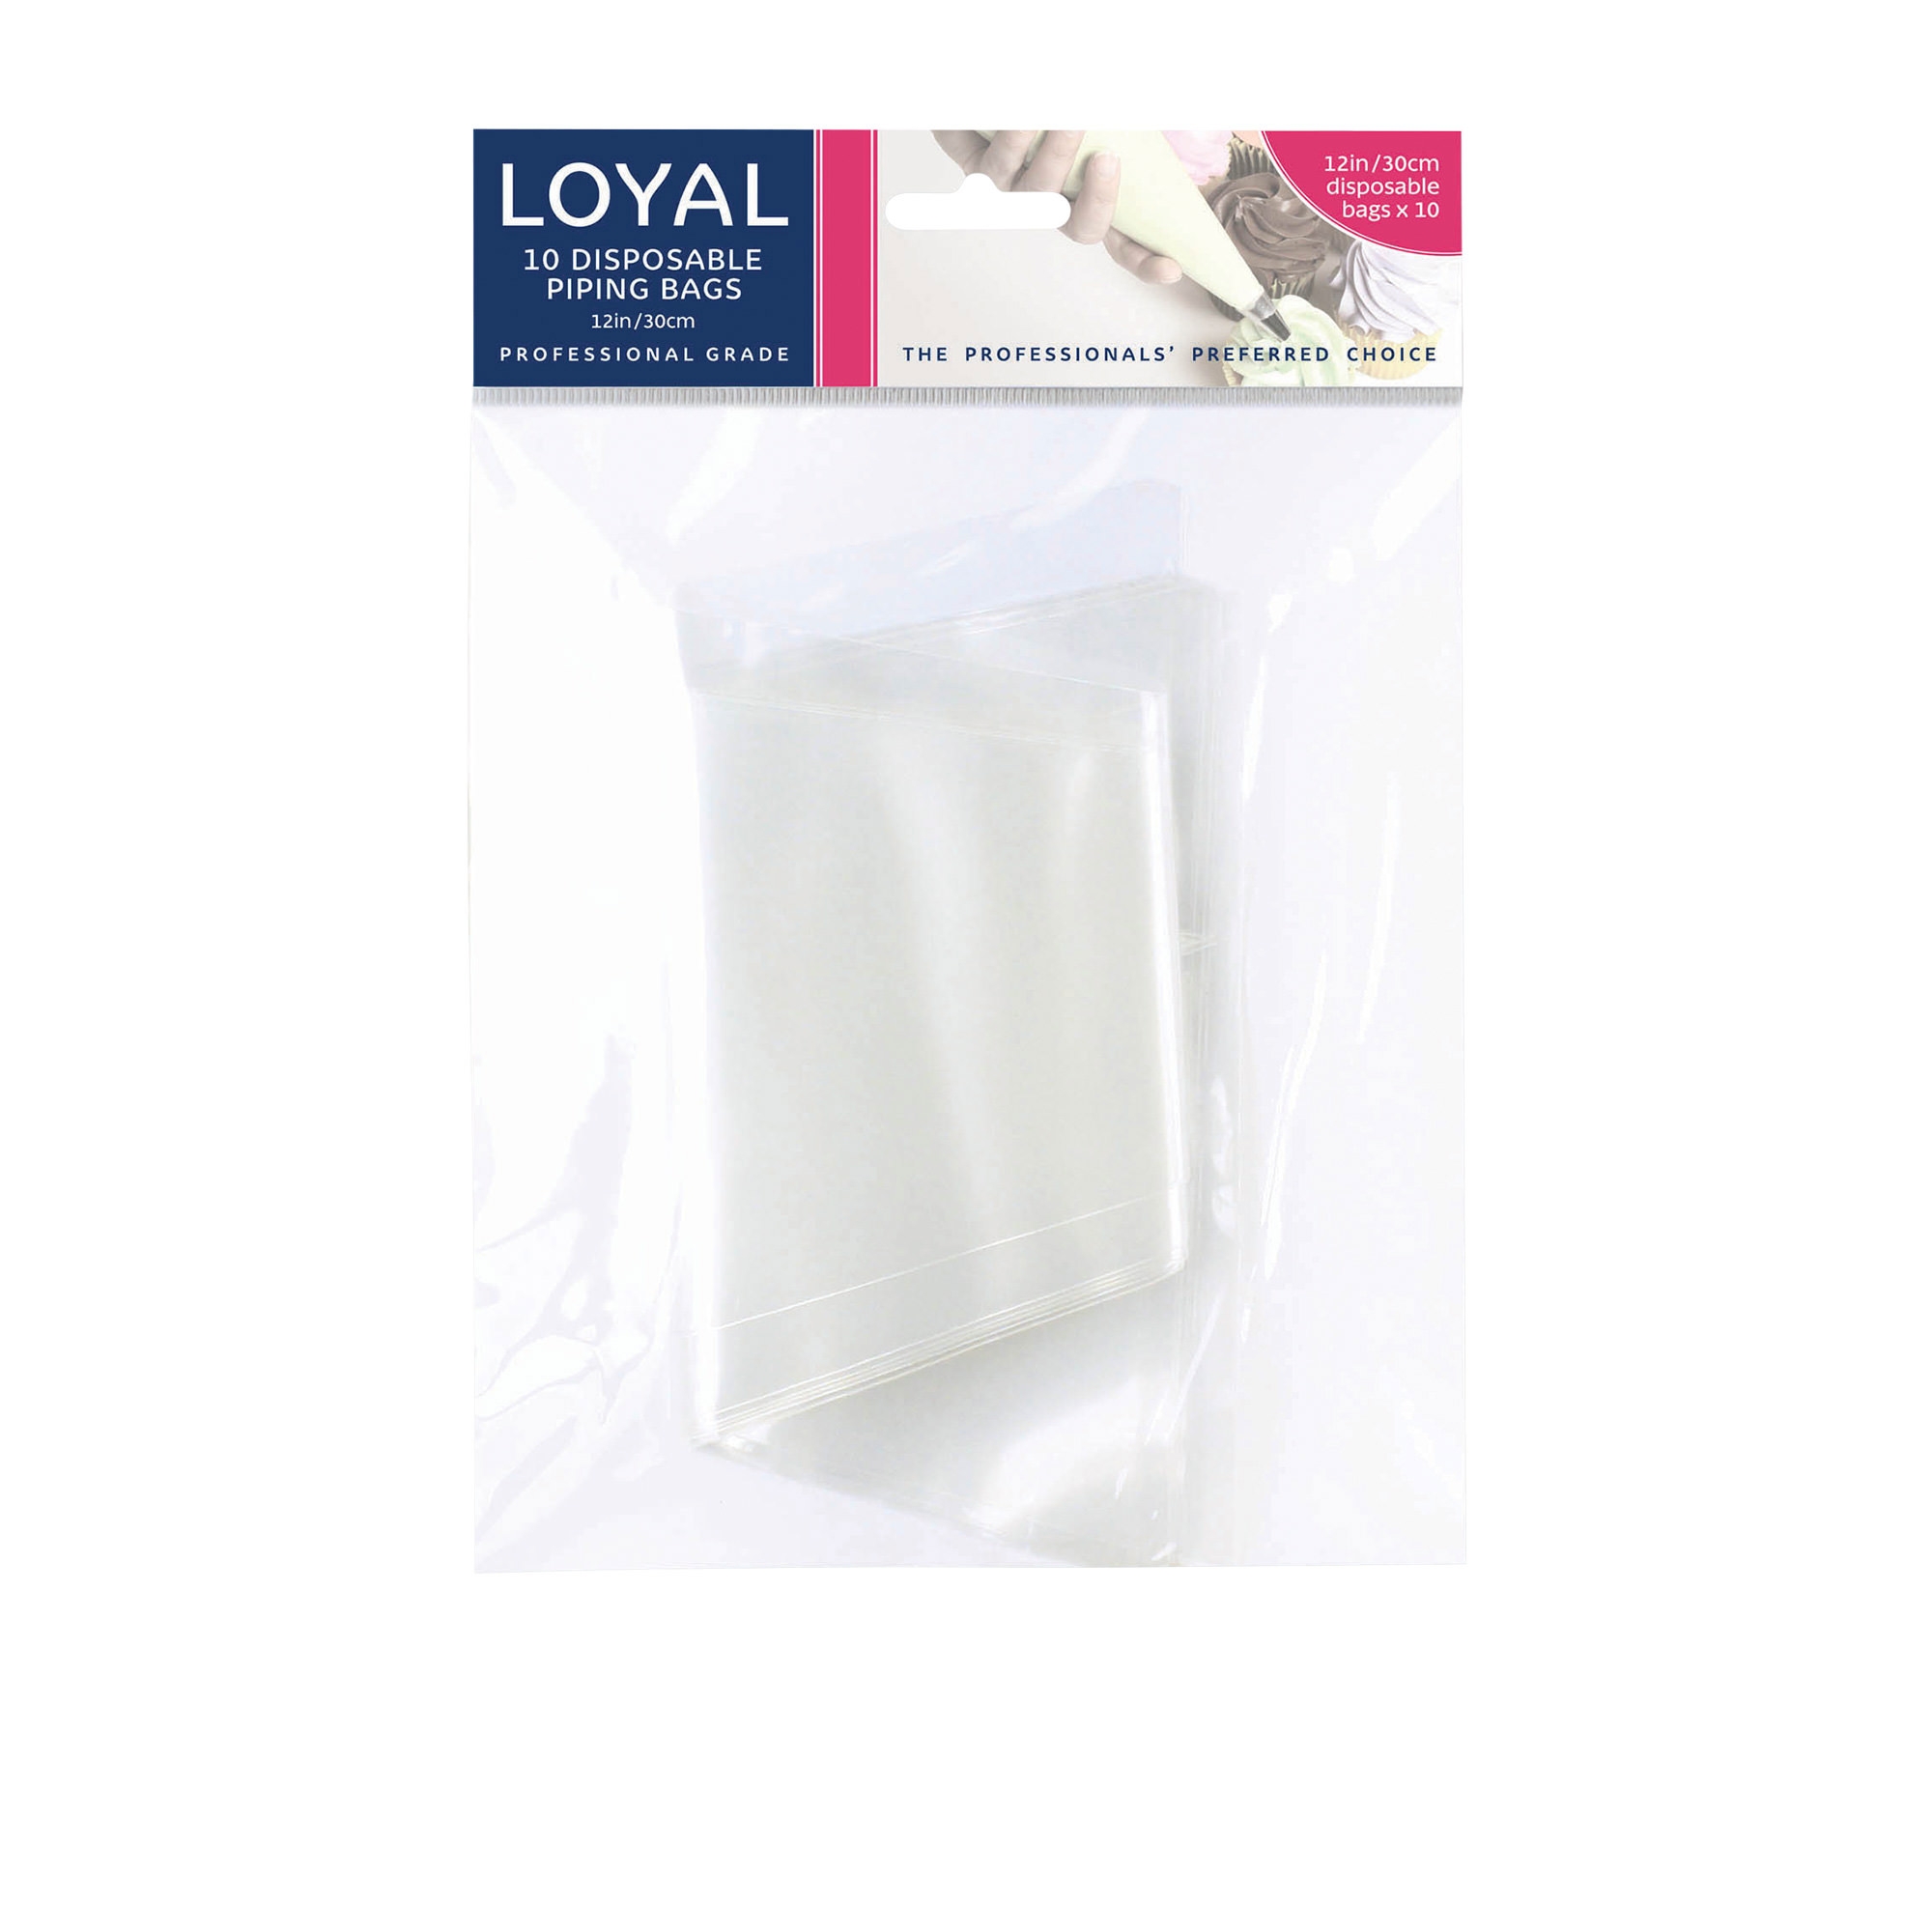 Loyal 10pk Disposable Piping Bag 30cm Image 1